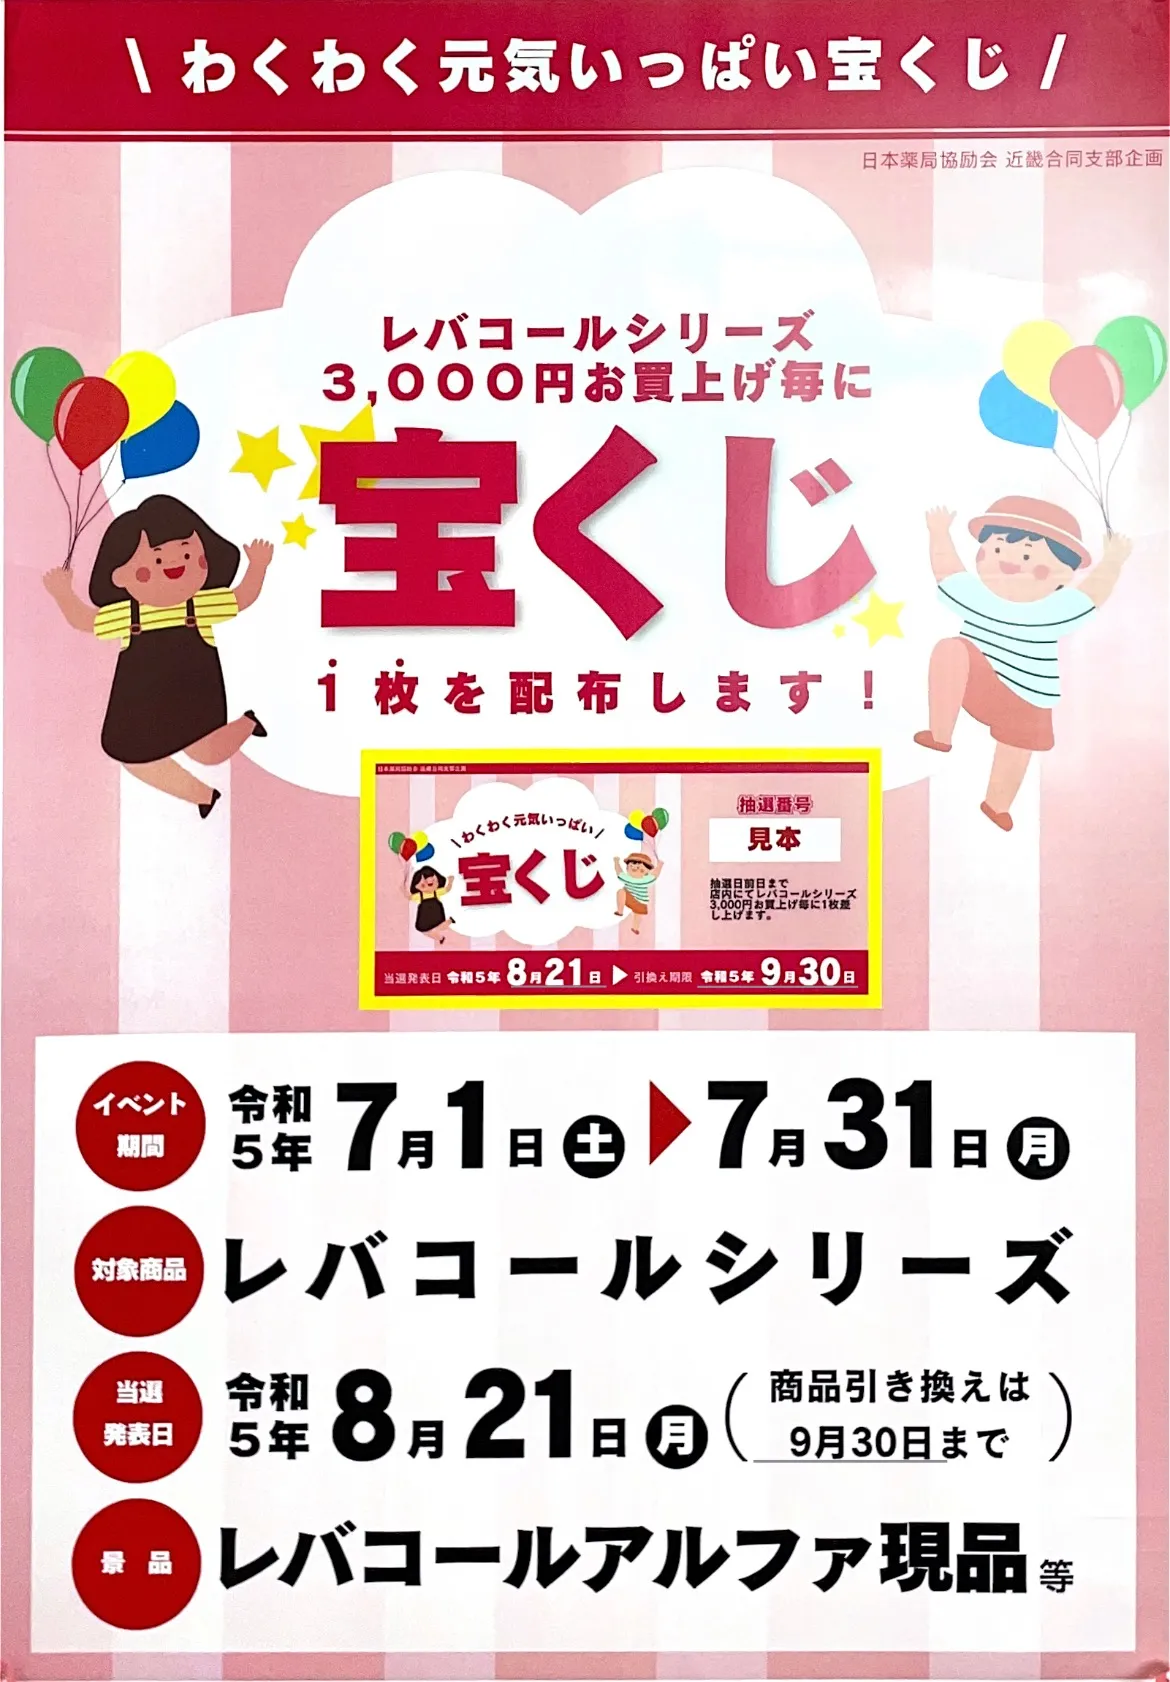 神戸と三木にある薬局の【宝くじイベント当選者発表】をお知らせします。